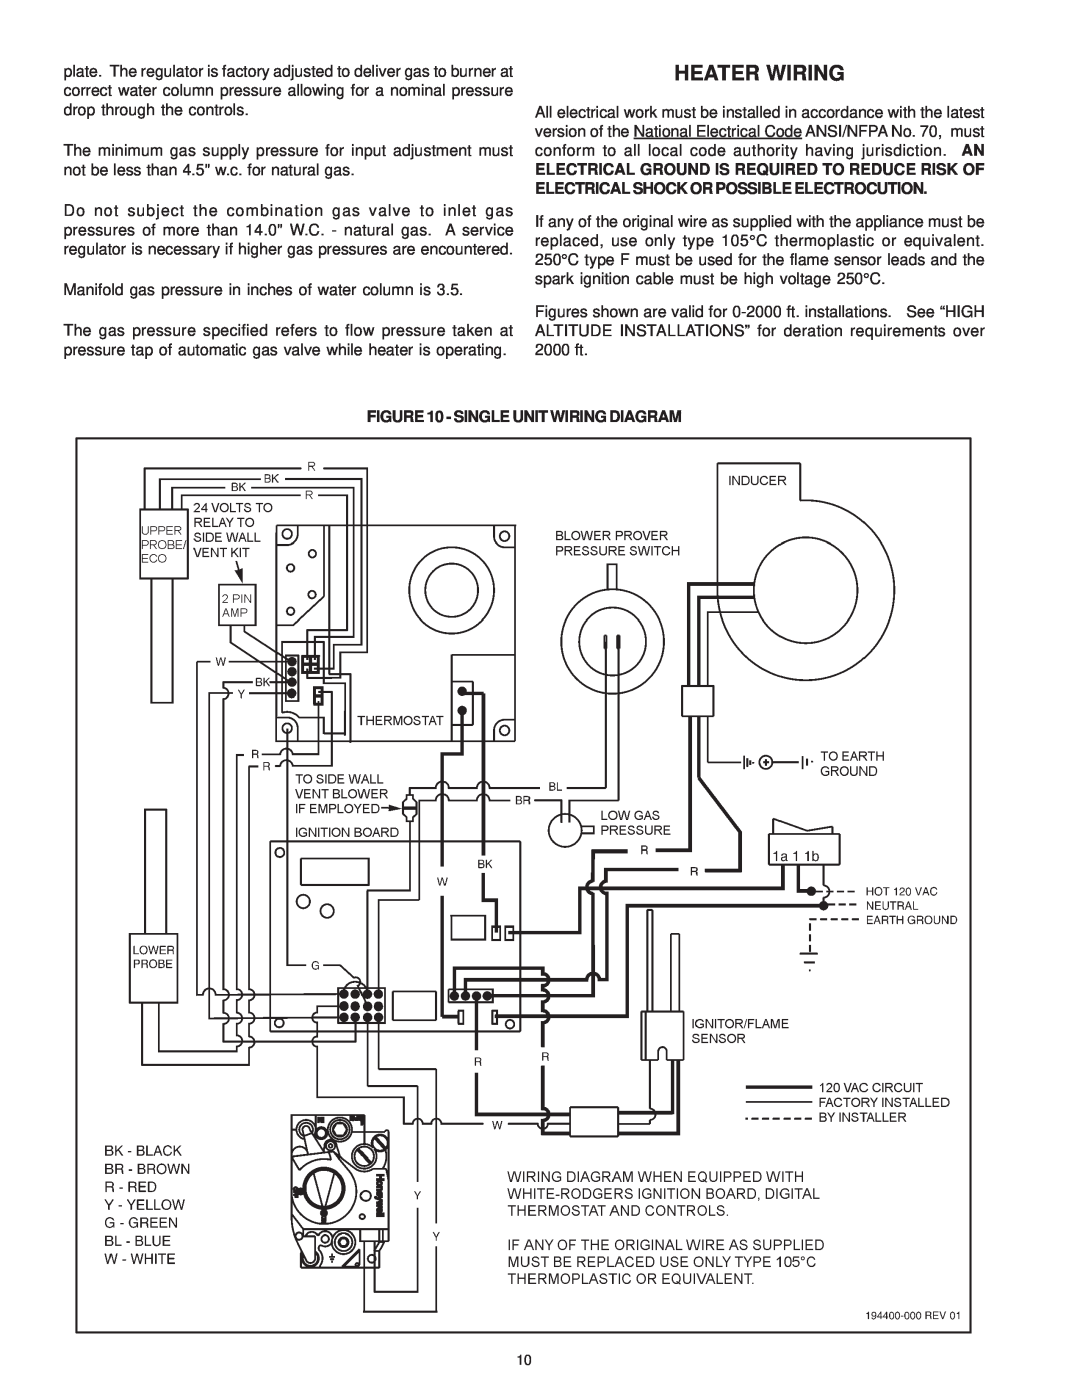 A.O. Smith SBD 30 150 warranty Heater Wiring, Single Unit Wiring Diagram 